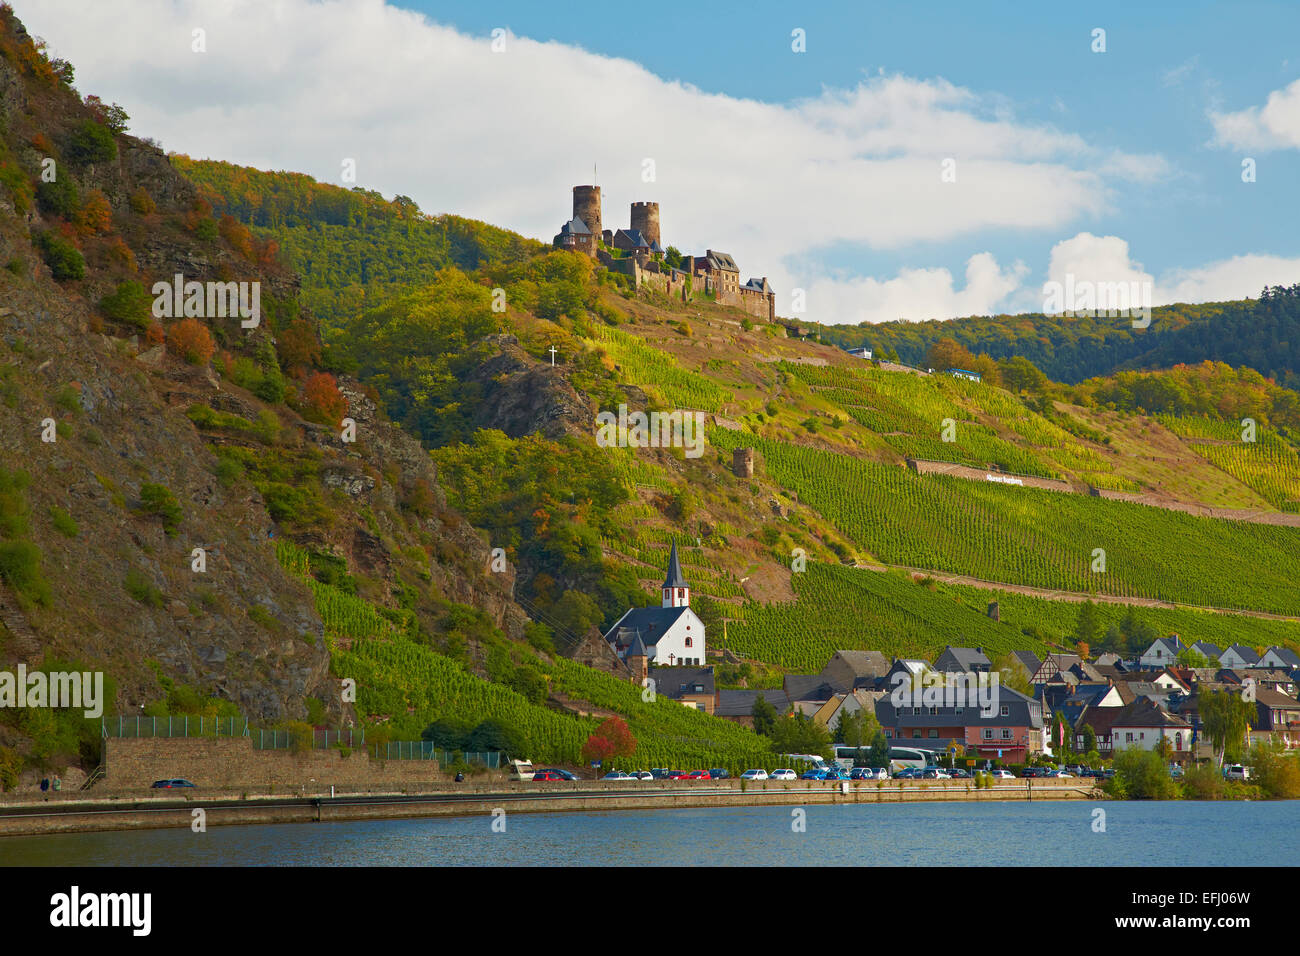 Burg Thurant Castle, Alken, Mosel, Rhineland-Palatinate, Germany, Europe Stock Photo